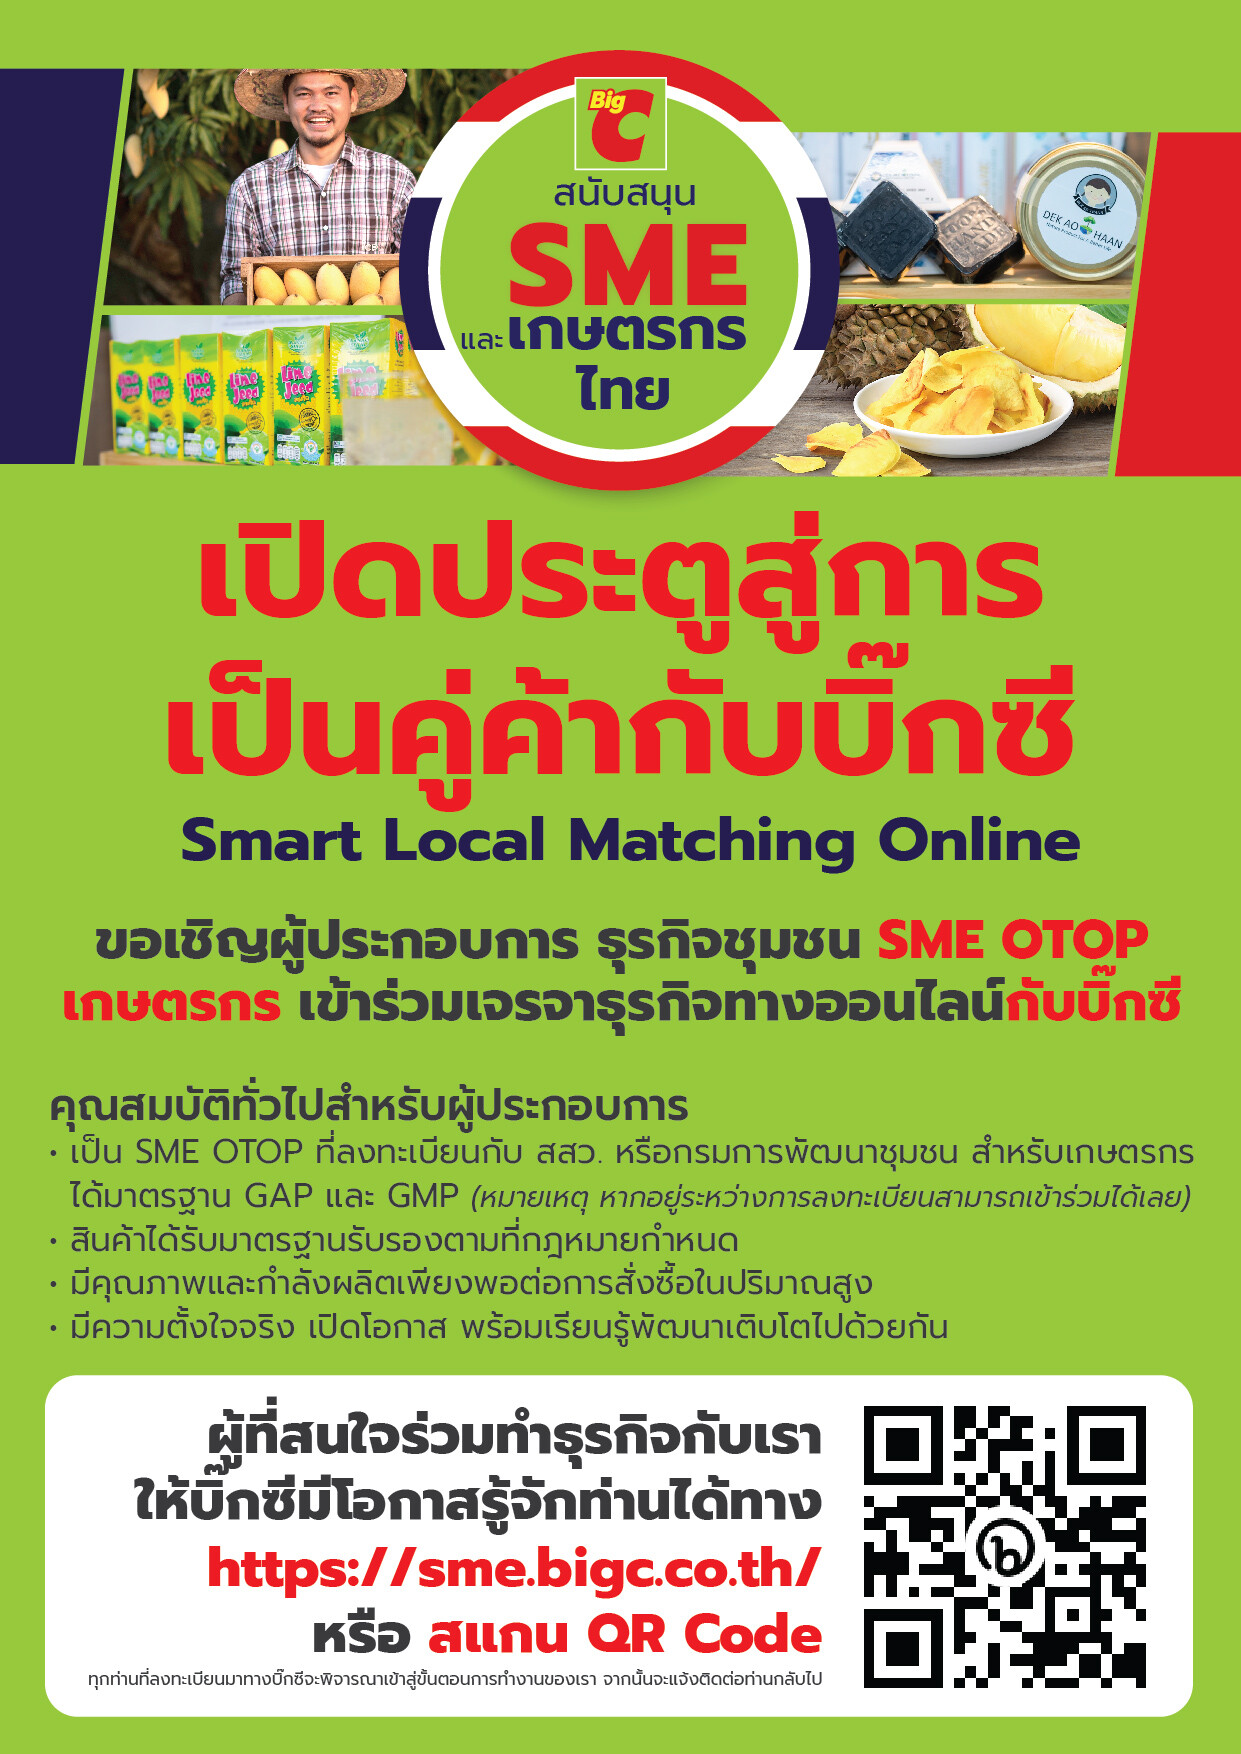 บิ๊กซี จัดโครงการ "Big C Big Smart Local - ธุรกิจชุมชนไทย โตไปด้วยกัน" เชิญผู้ประกอบการ SMEs OTOP และ เกษตรกร ร่วมจับคู่ธุรกิจ Matching Online